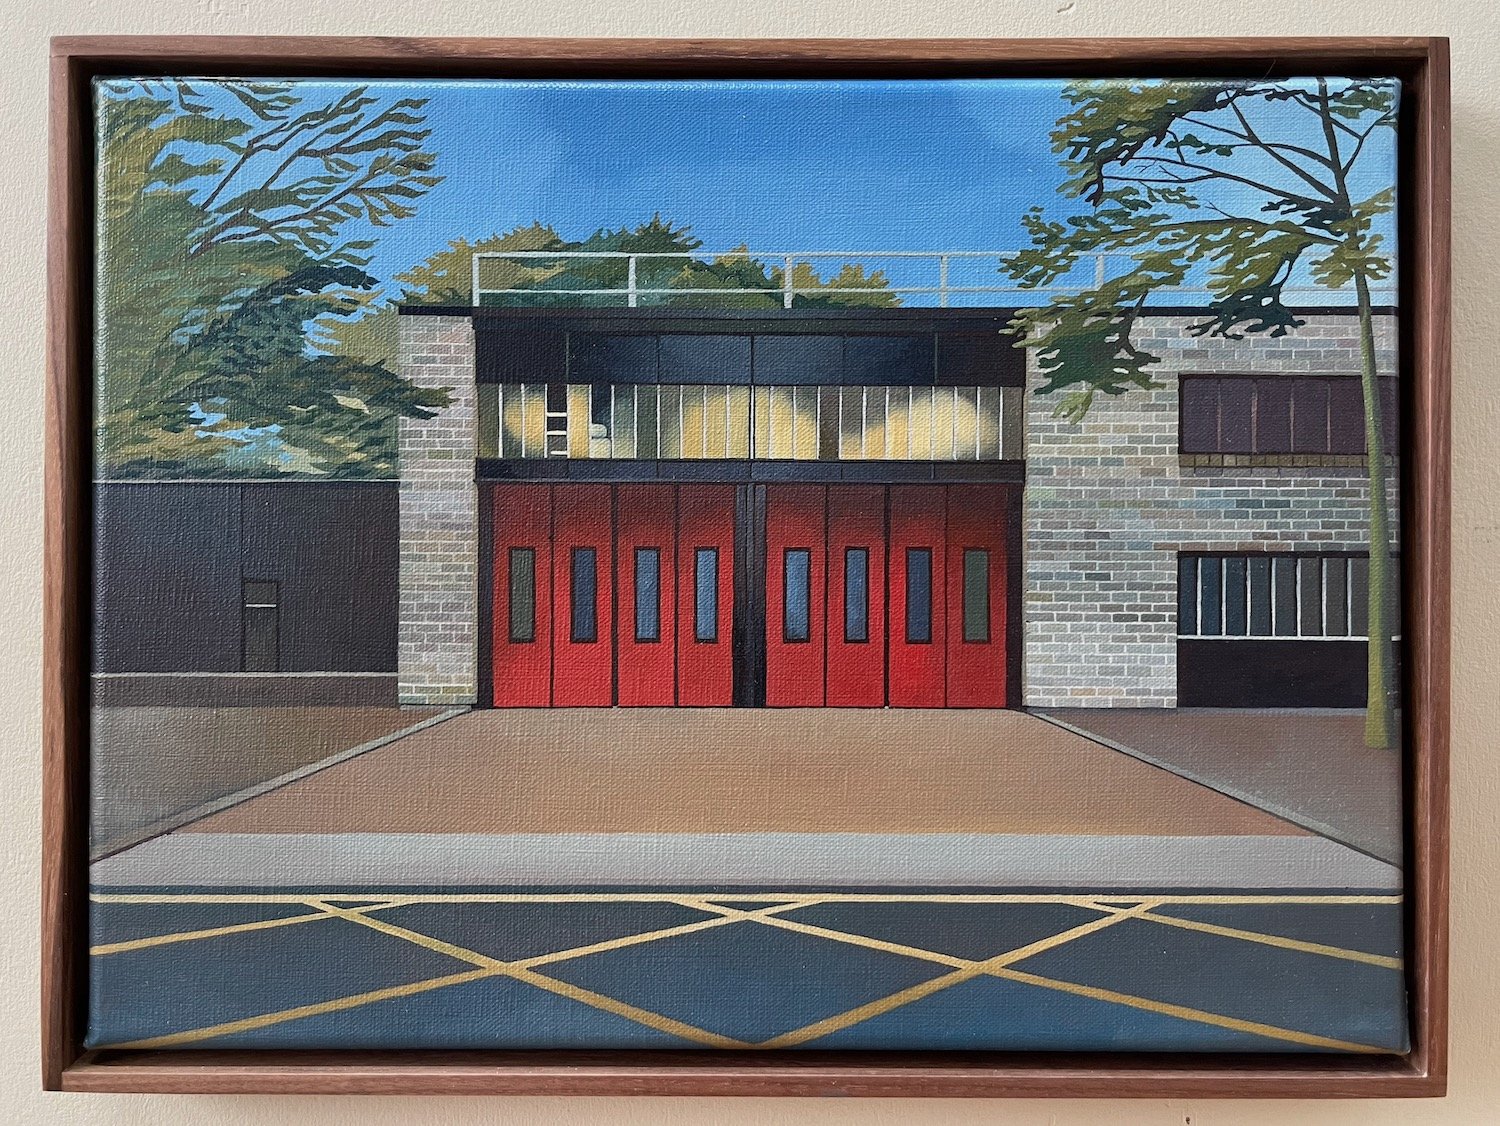 Stoke Newington Fire Station